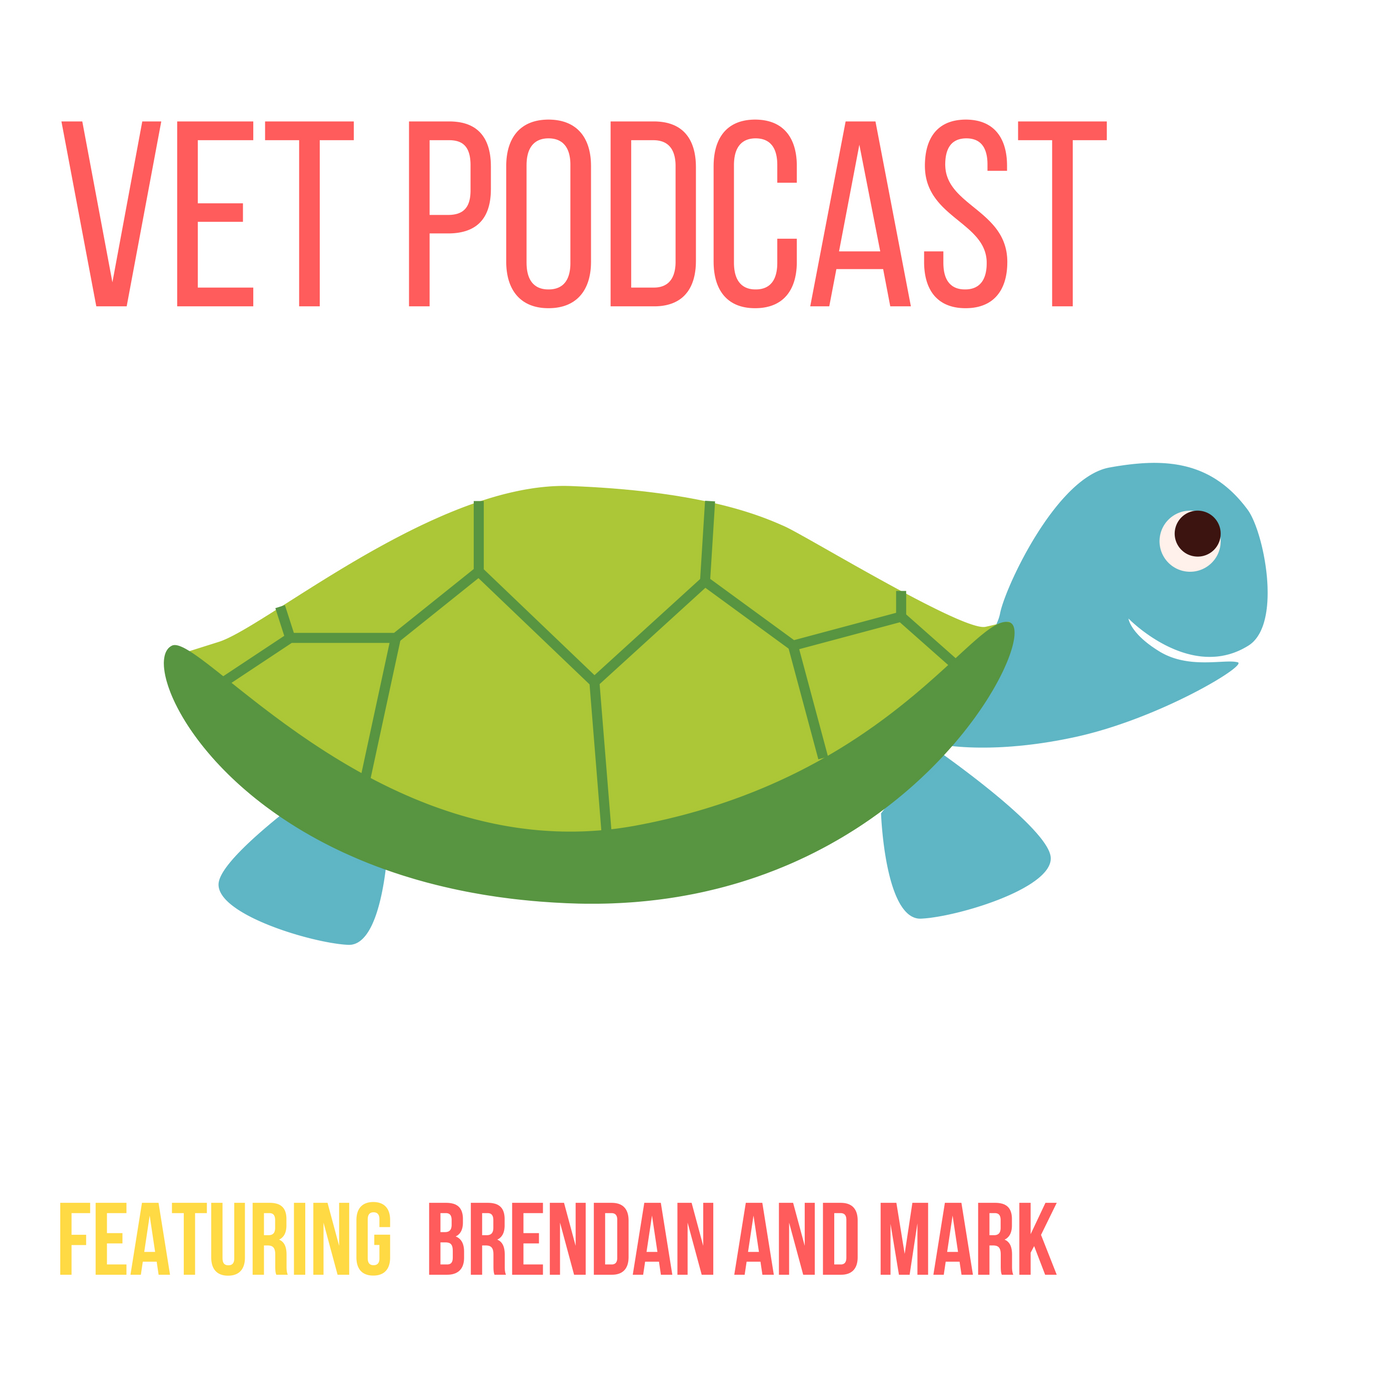 Veterinary Podcast by the VetGurus